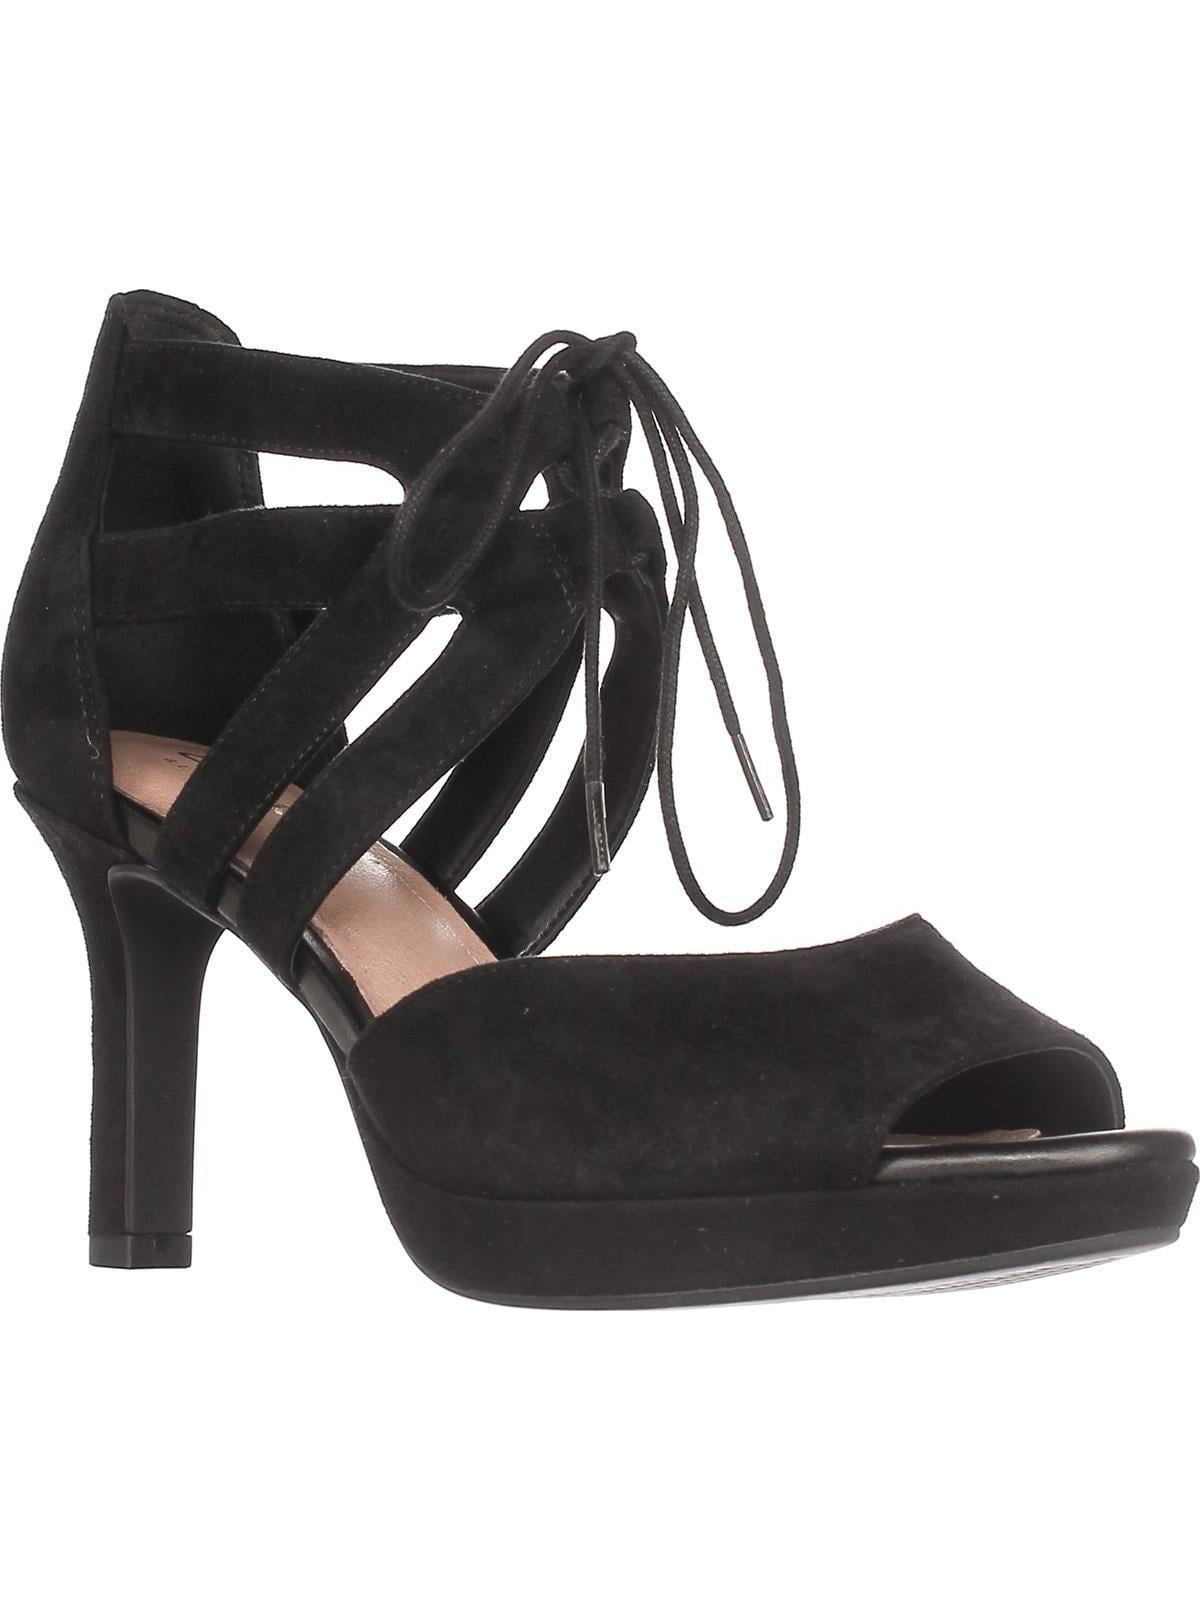 Praktisk fast filthy Womens Clarks Mayra Ellie Lace-Up Comfort Sandals, Black Suede, 10 US /  41.5 EU - Walmart.com